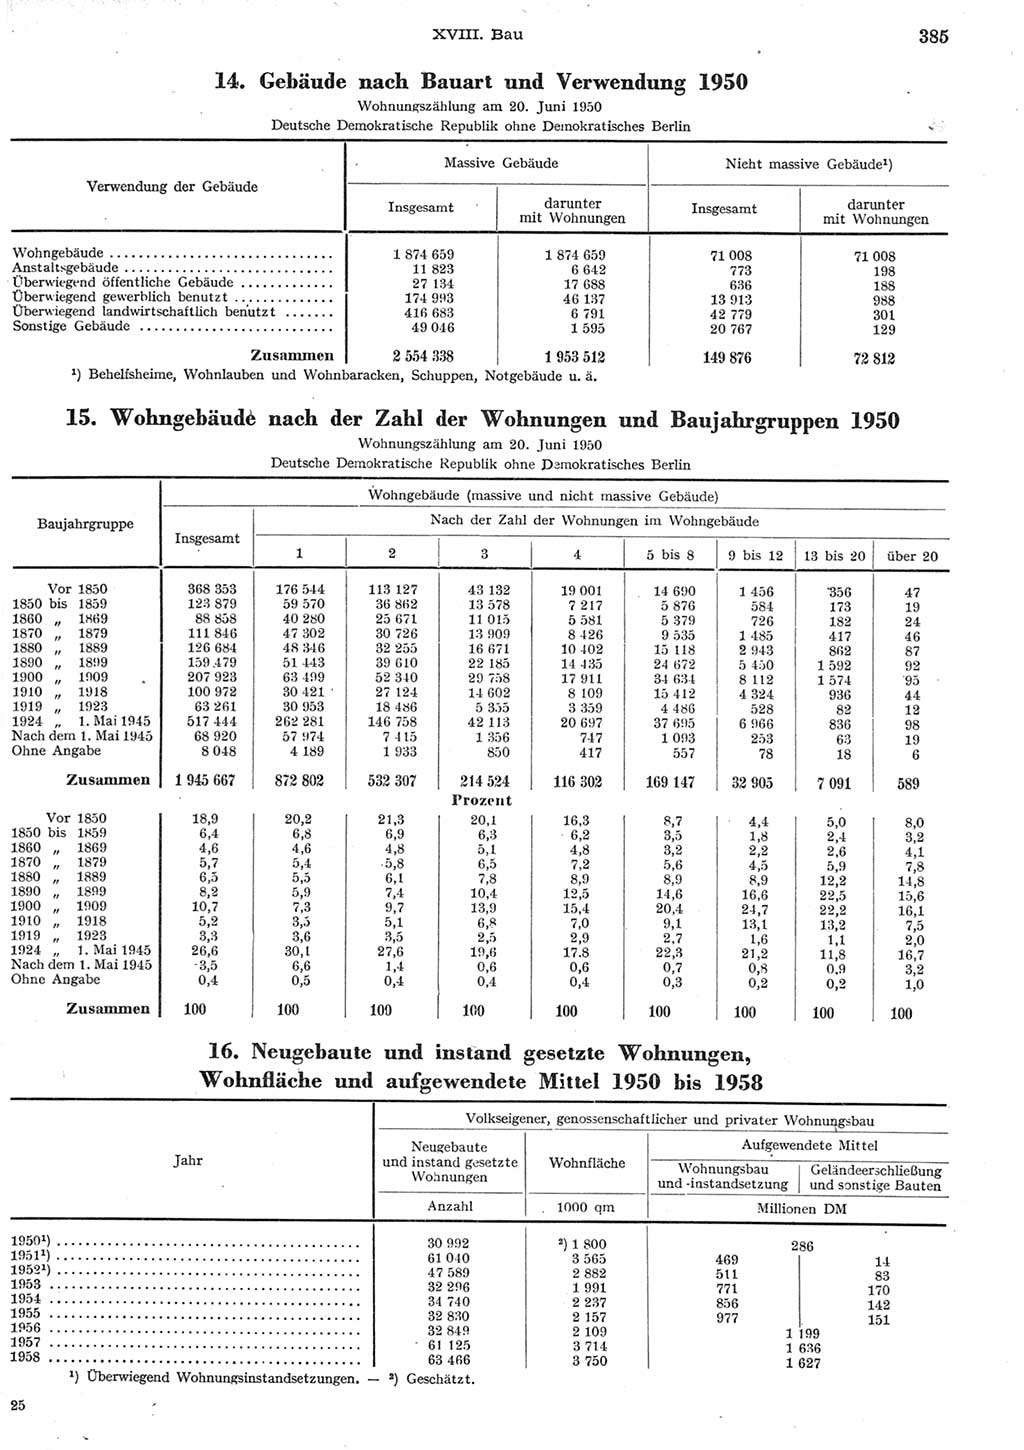 Statistisches Jahrbuch der Deutschen Demokratischen Republik (DDR) 1958, Seite 385 (Stat. Jb. DDR 1958, S. 385)